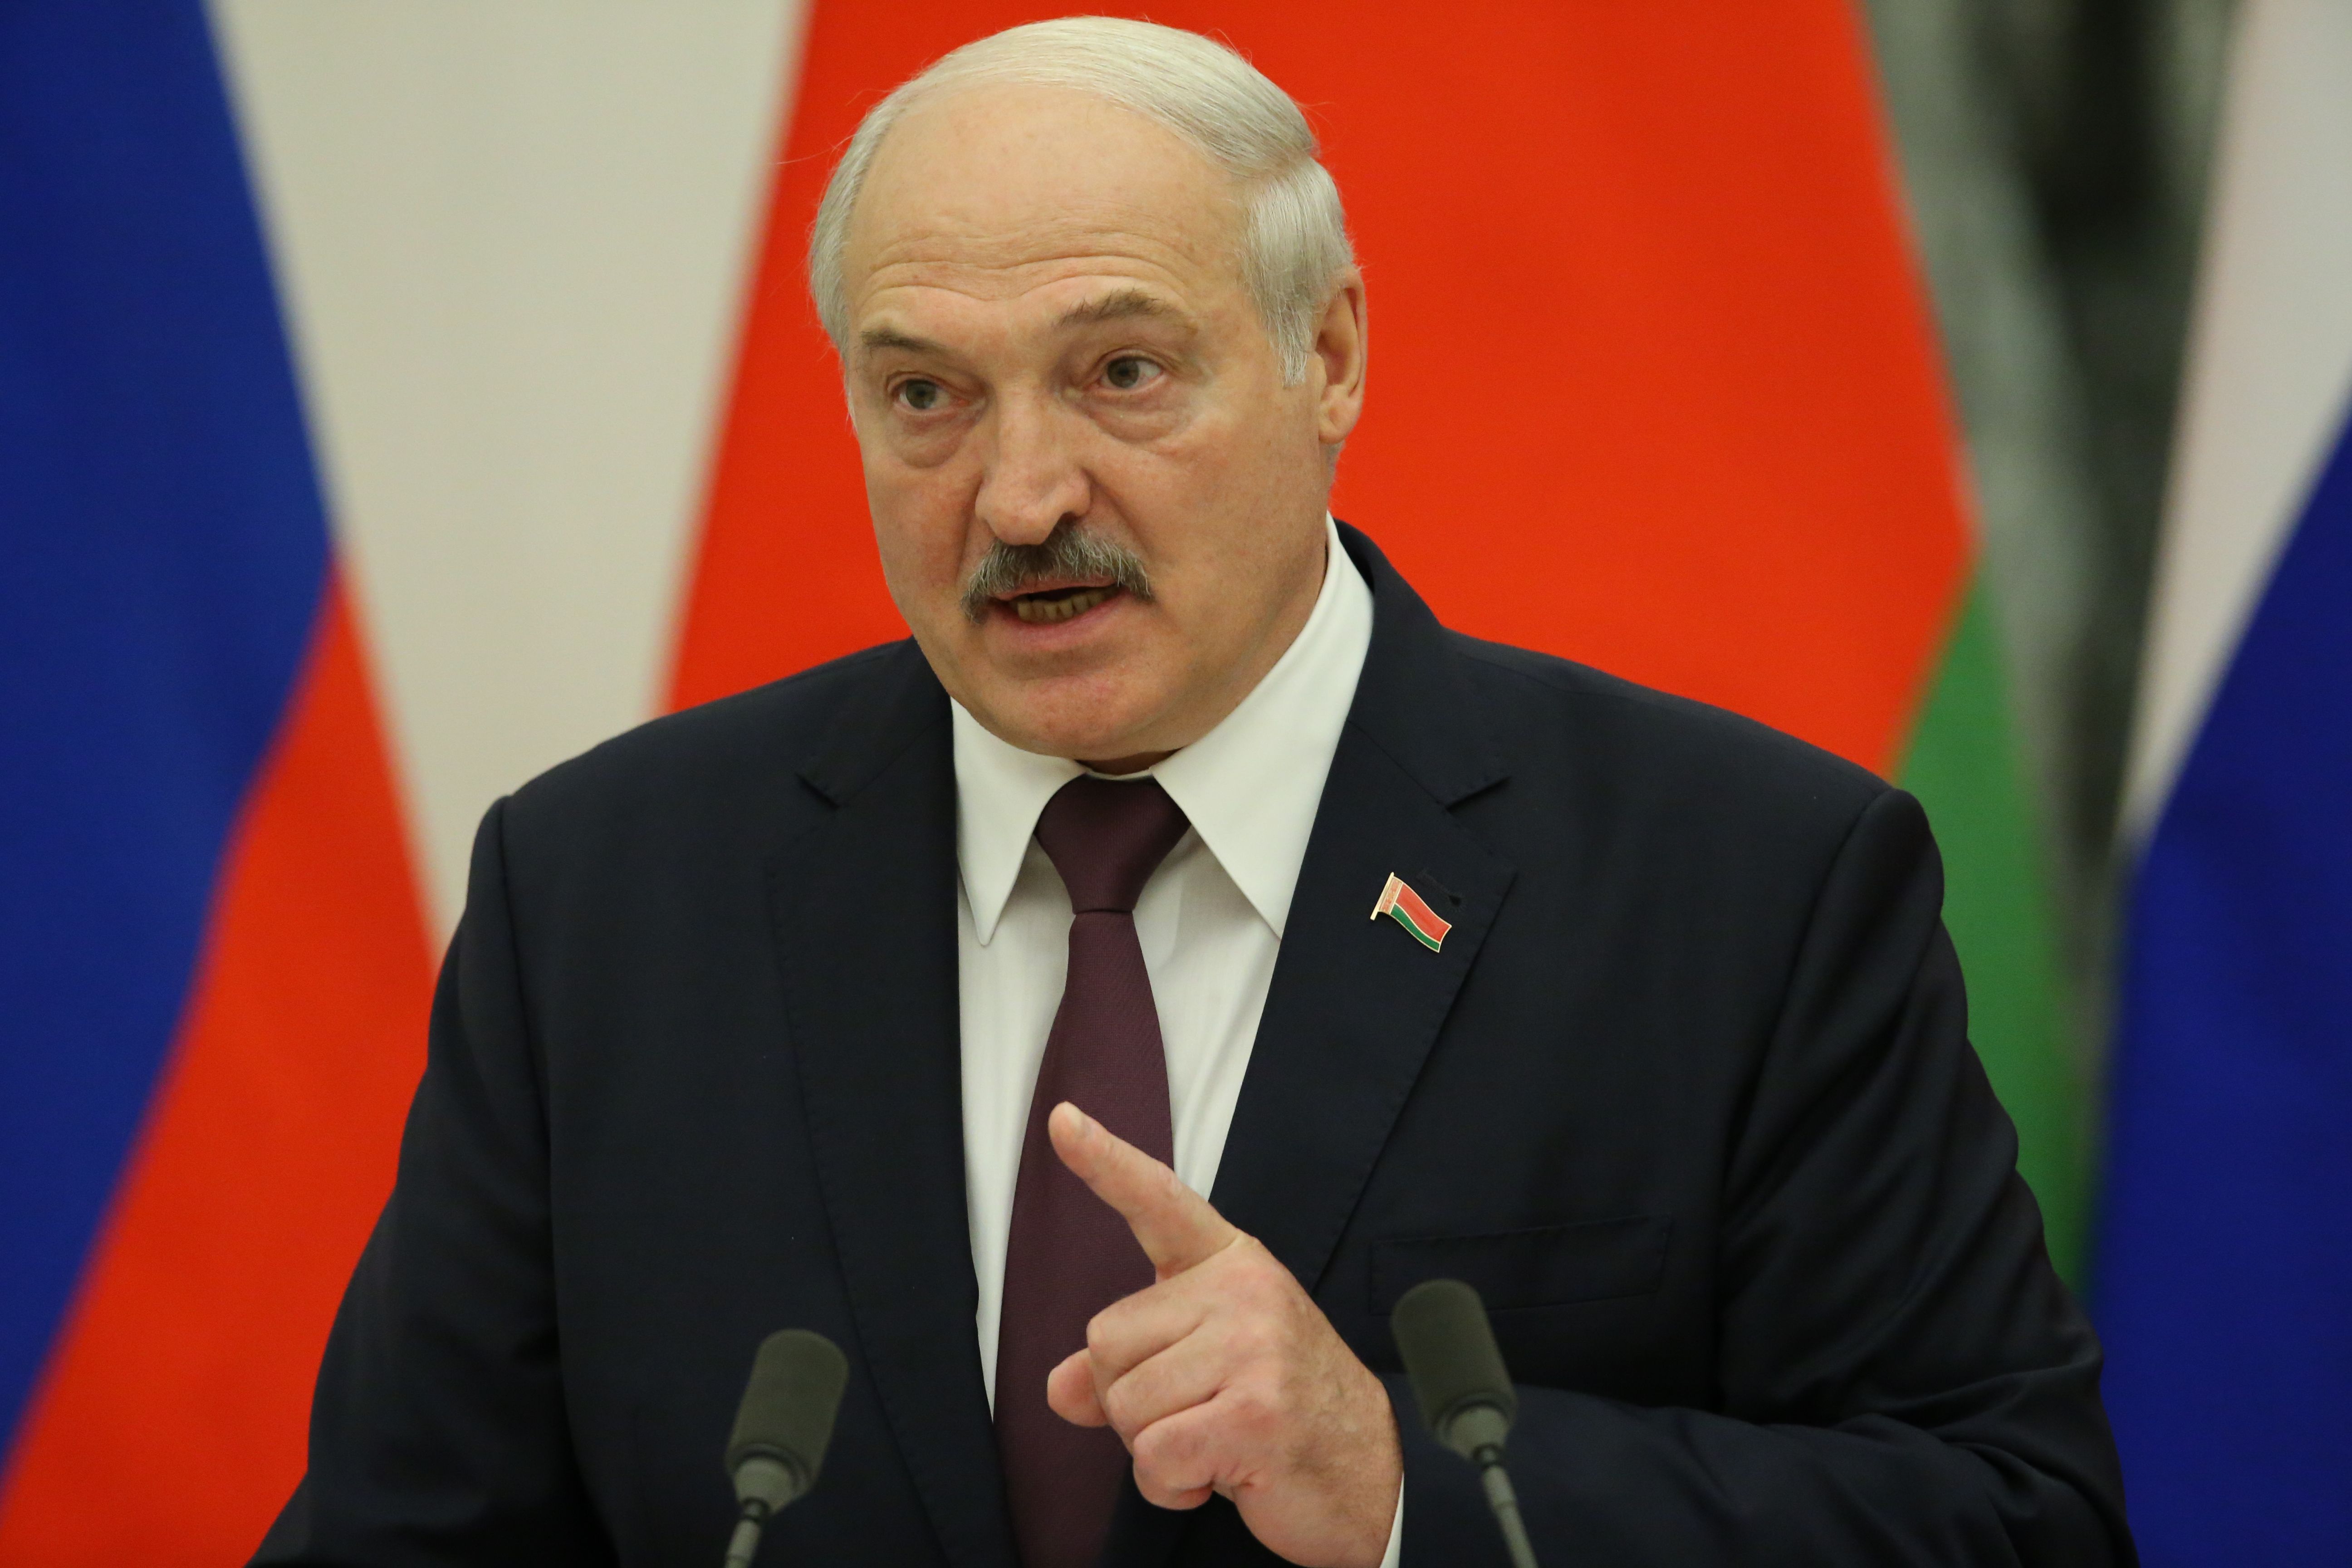 Лукашенко, вероятно, не получит доступа к ядерному оружию